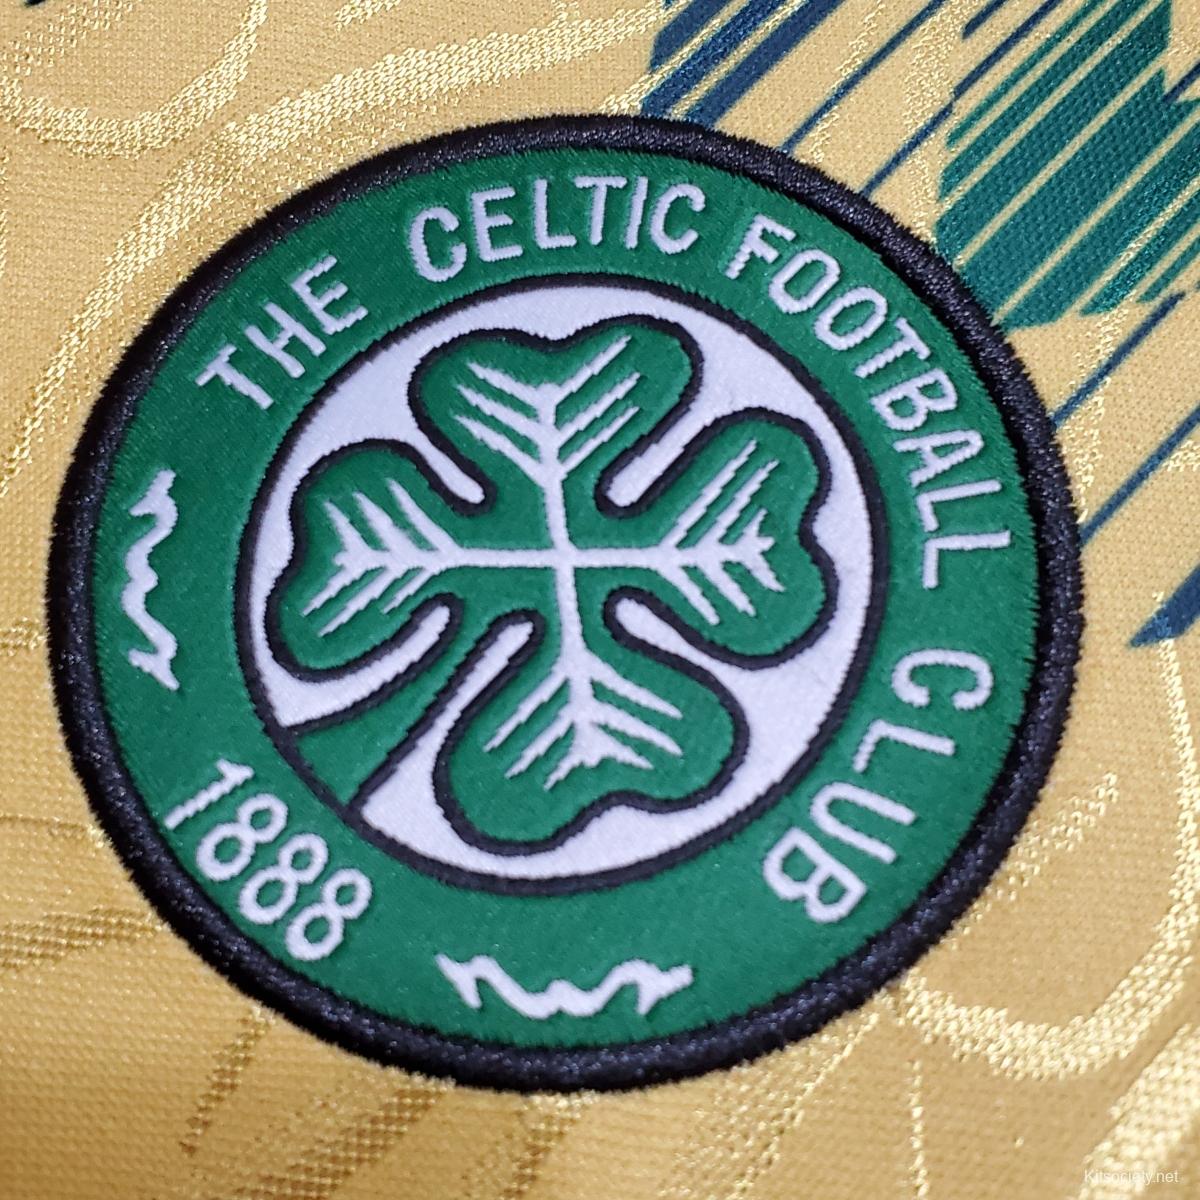 Celtic - Kitsociety